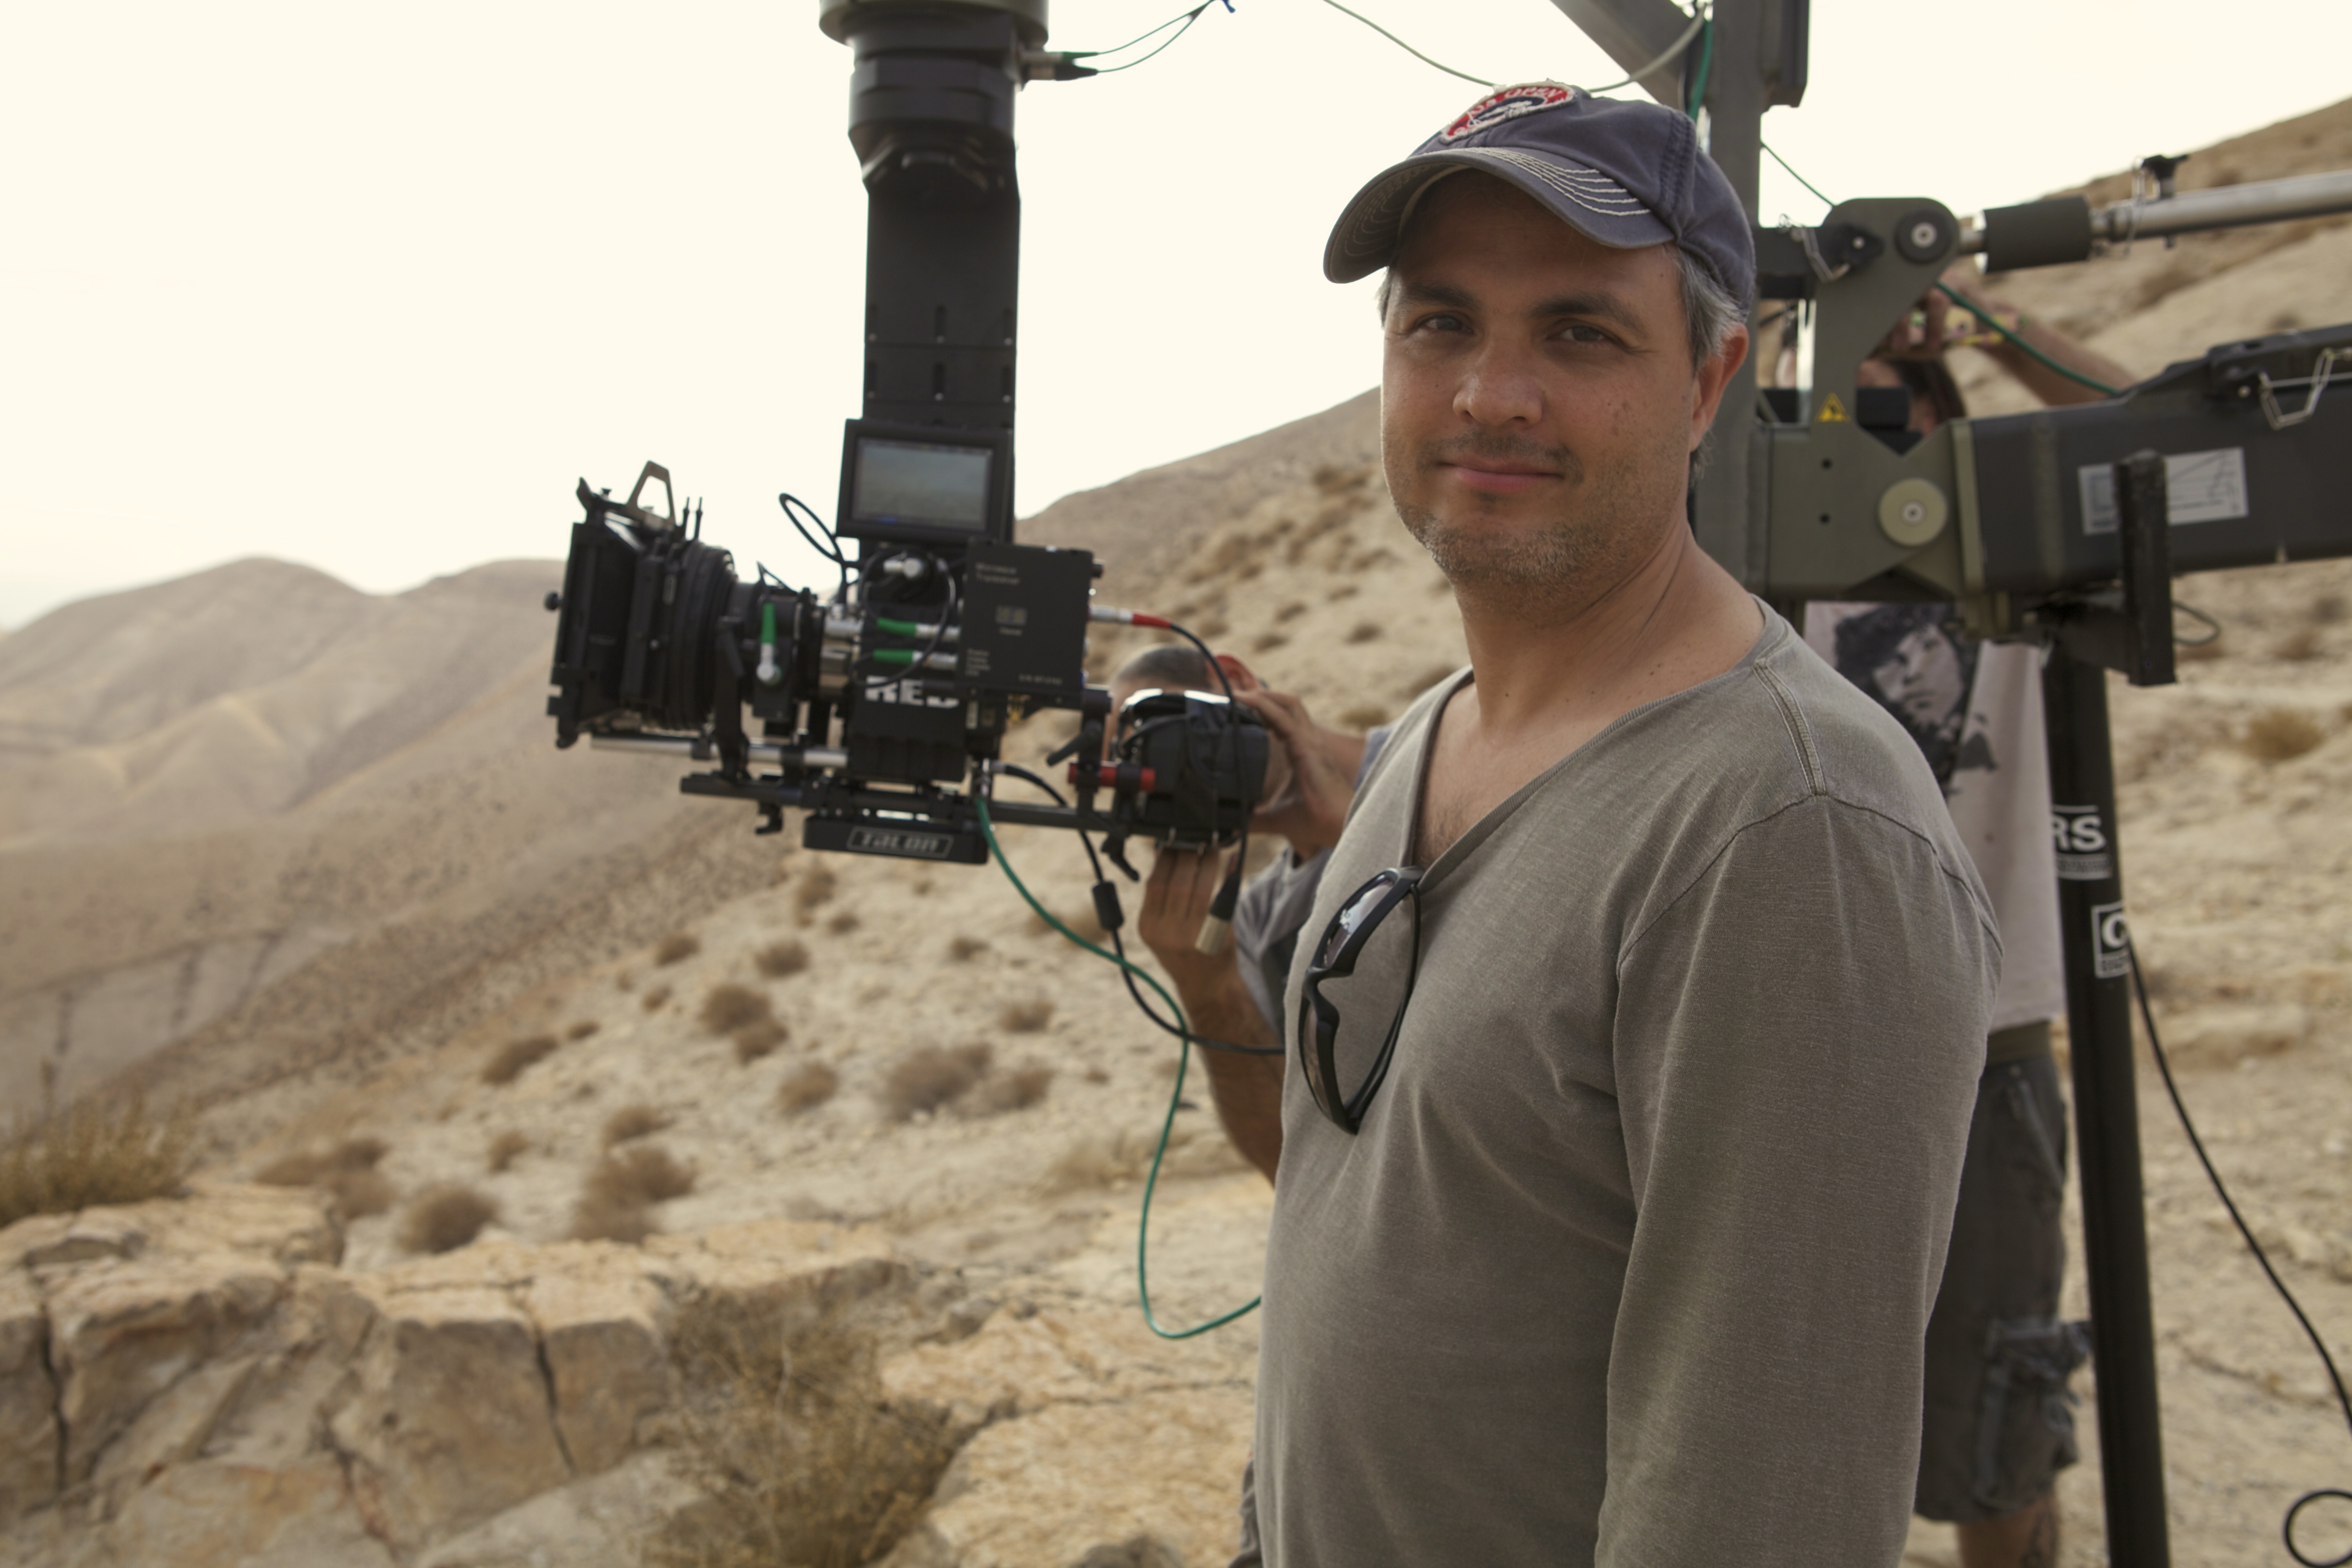 Alexandre Avancini filming in Israel Desert for Jose do Egito (TV series 2013).